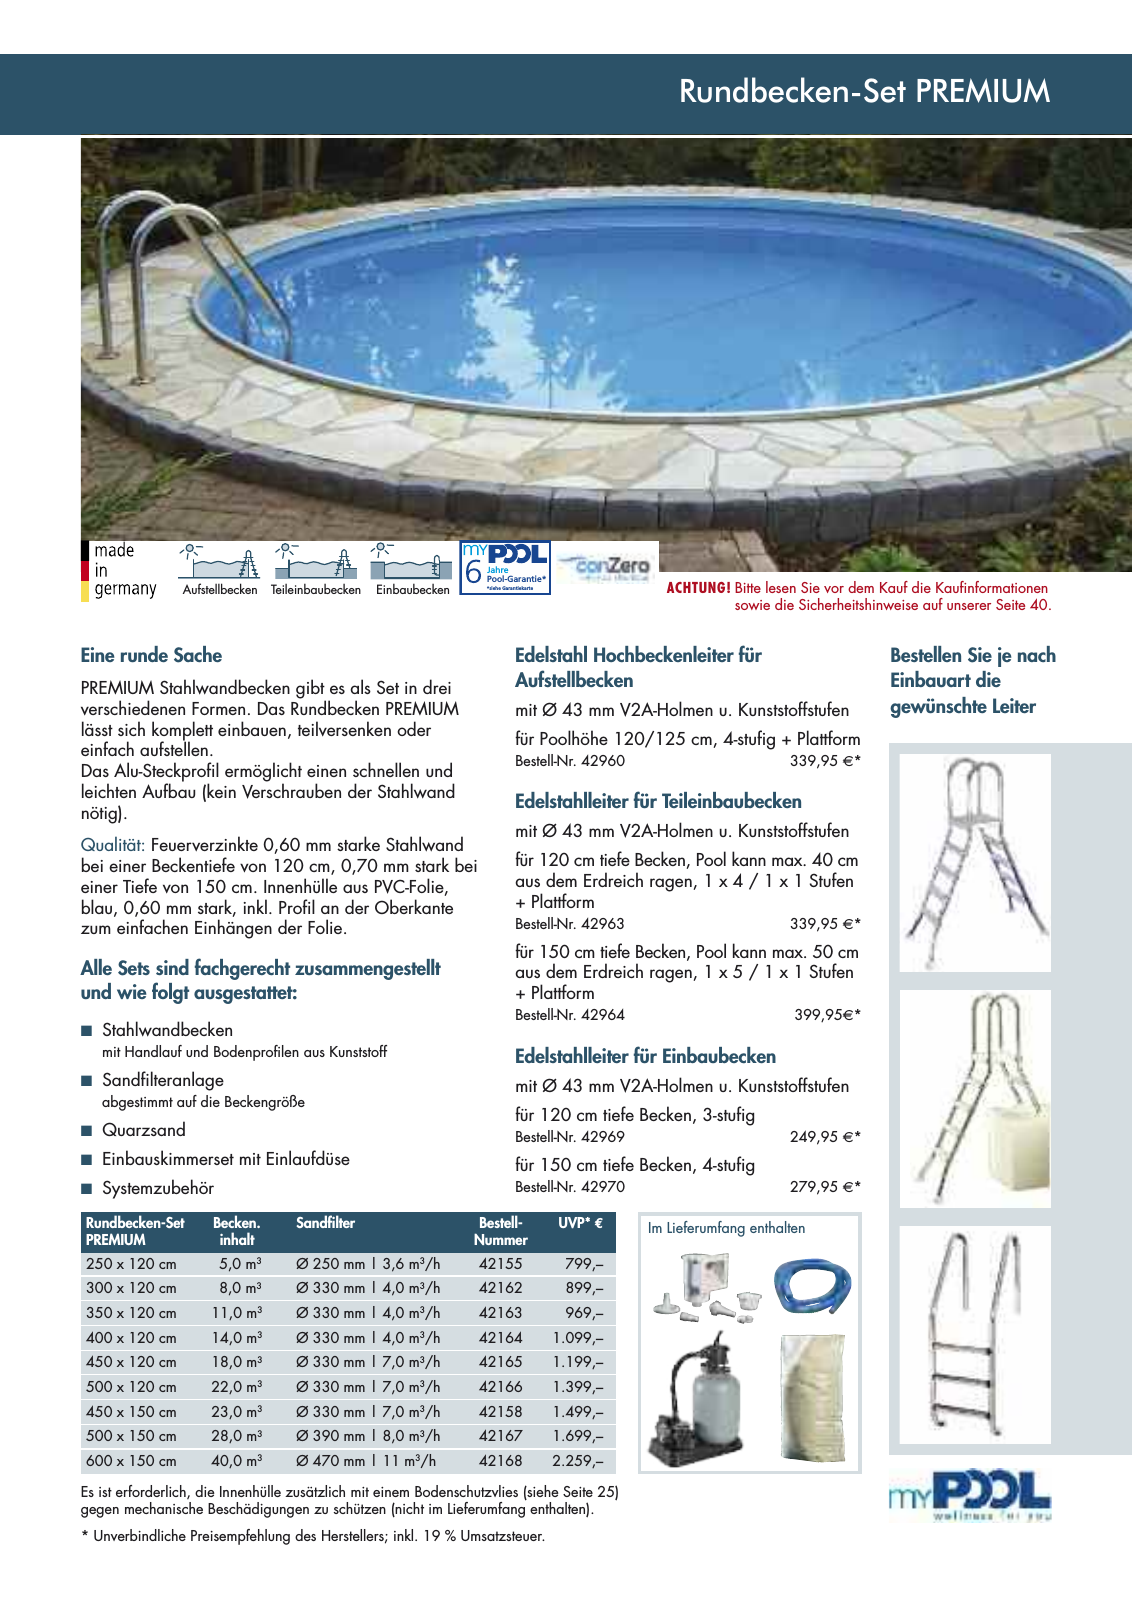 Vorschau myPool Schwimmbadkatalog 2016 Seite 7